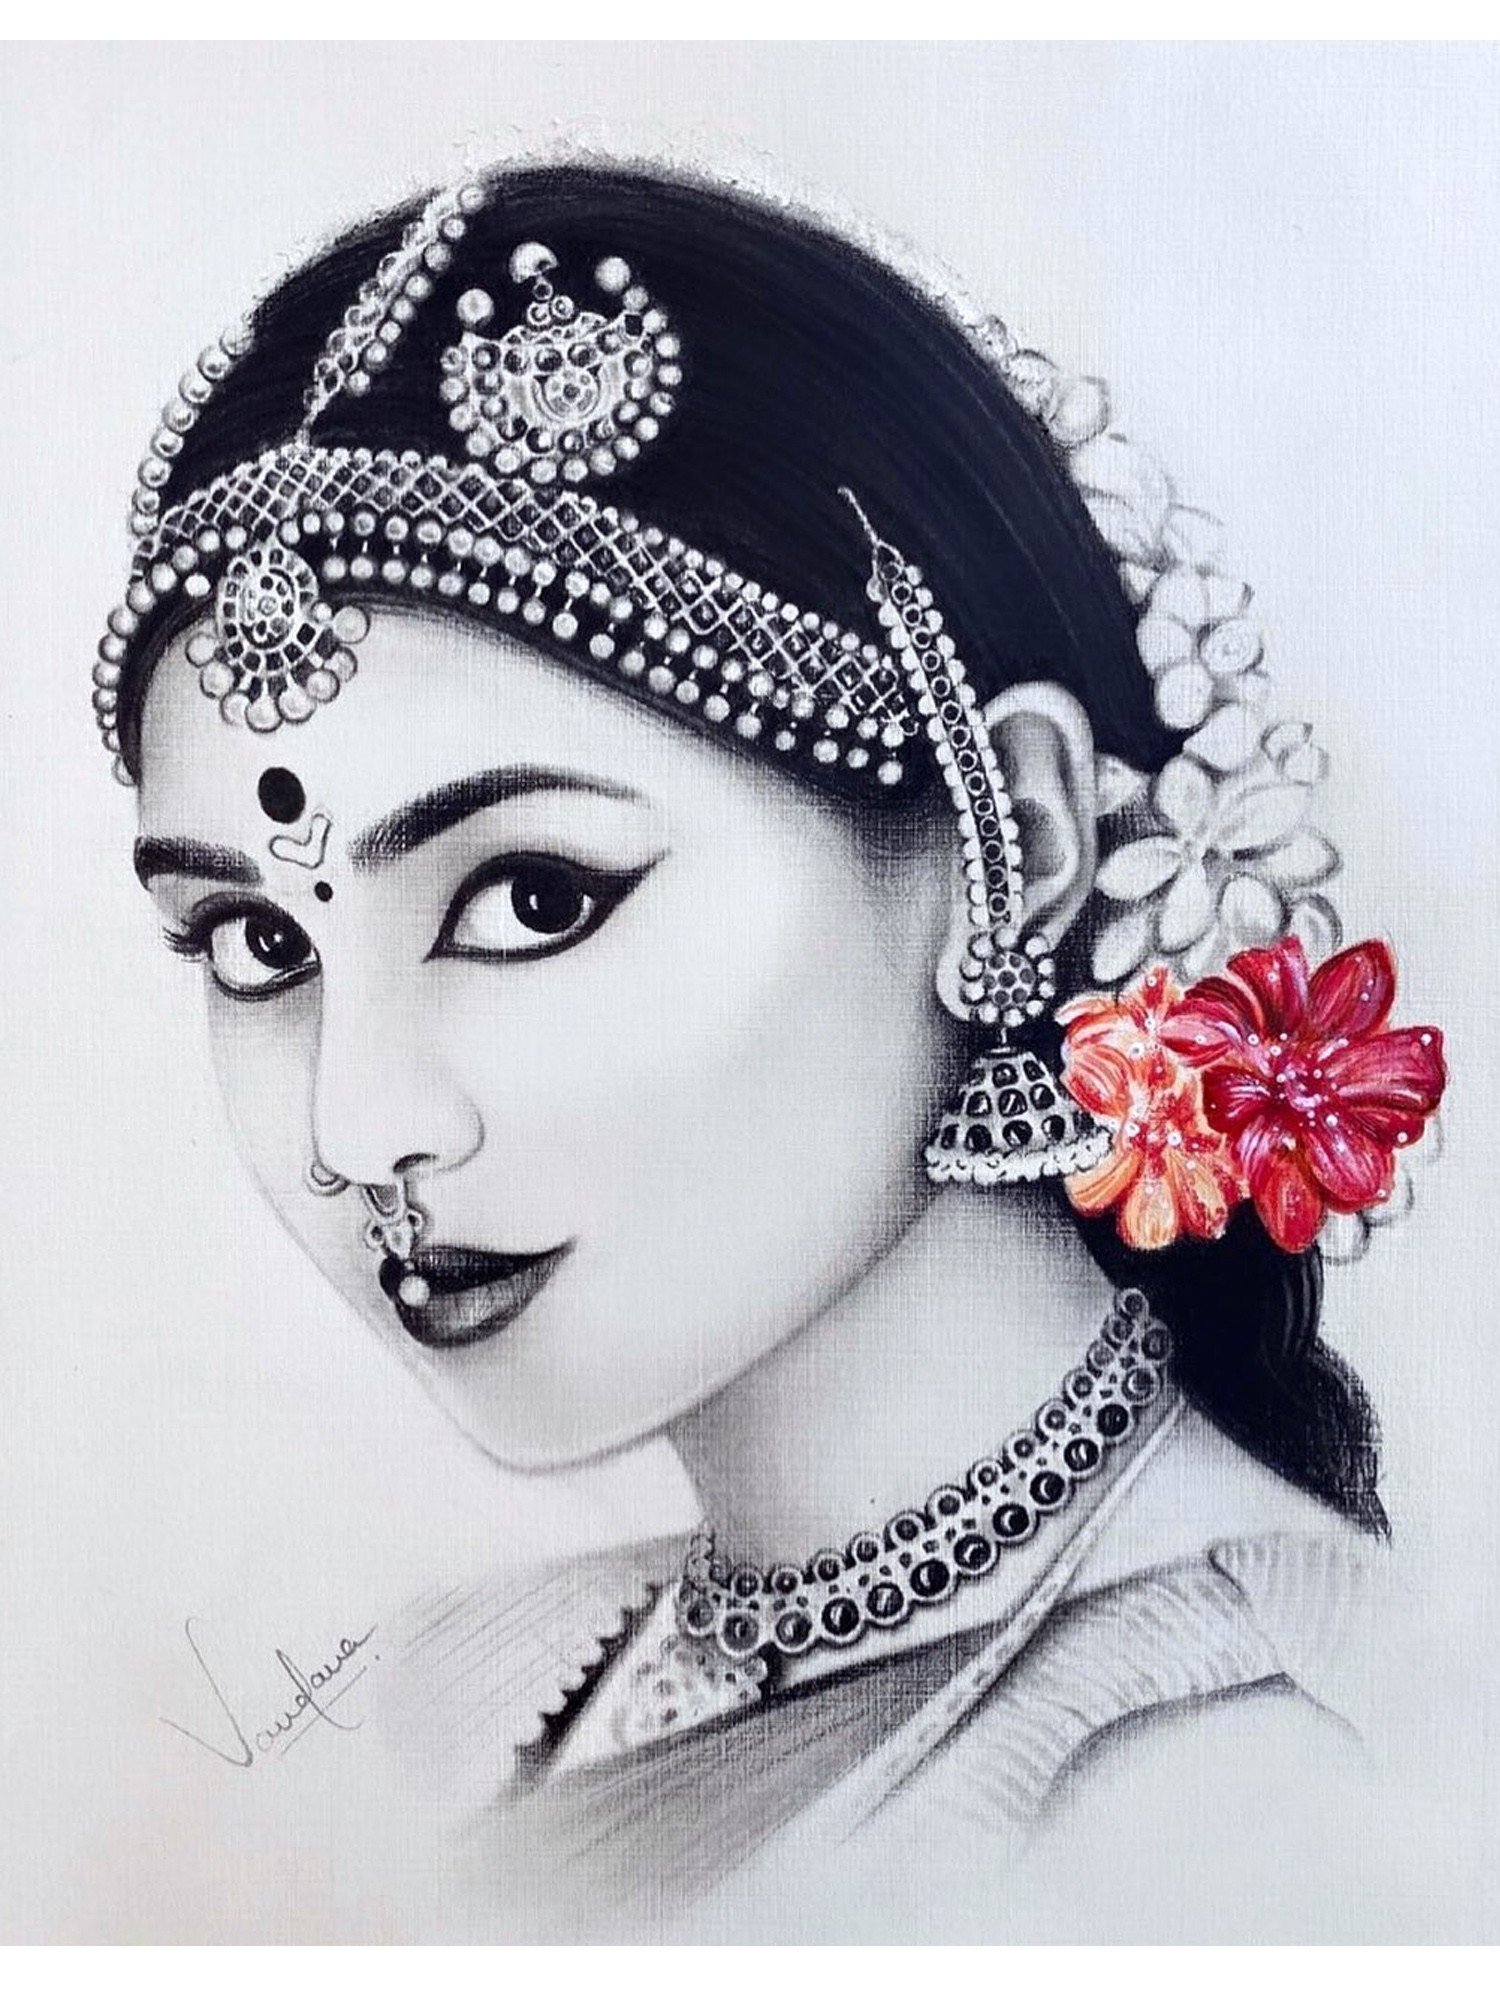 1297 Indian Bride Sketch Images Stock Photos  Vectors  Shutterstock